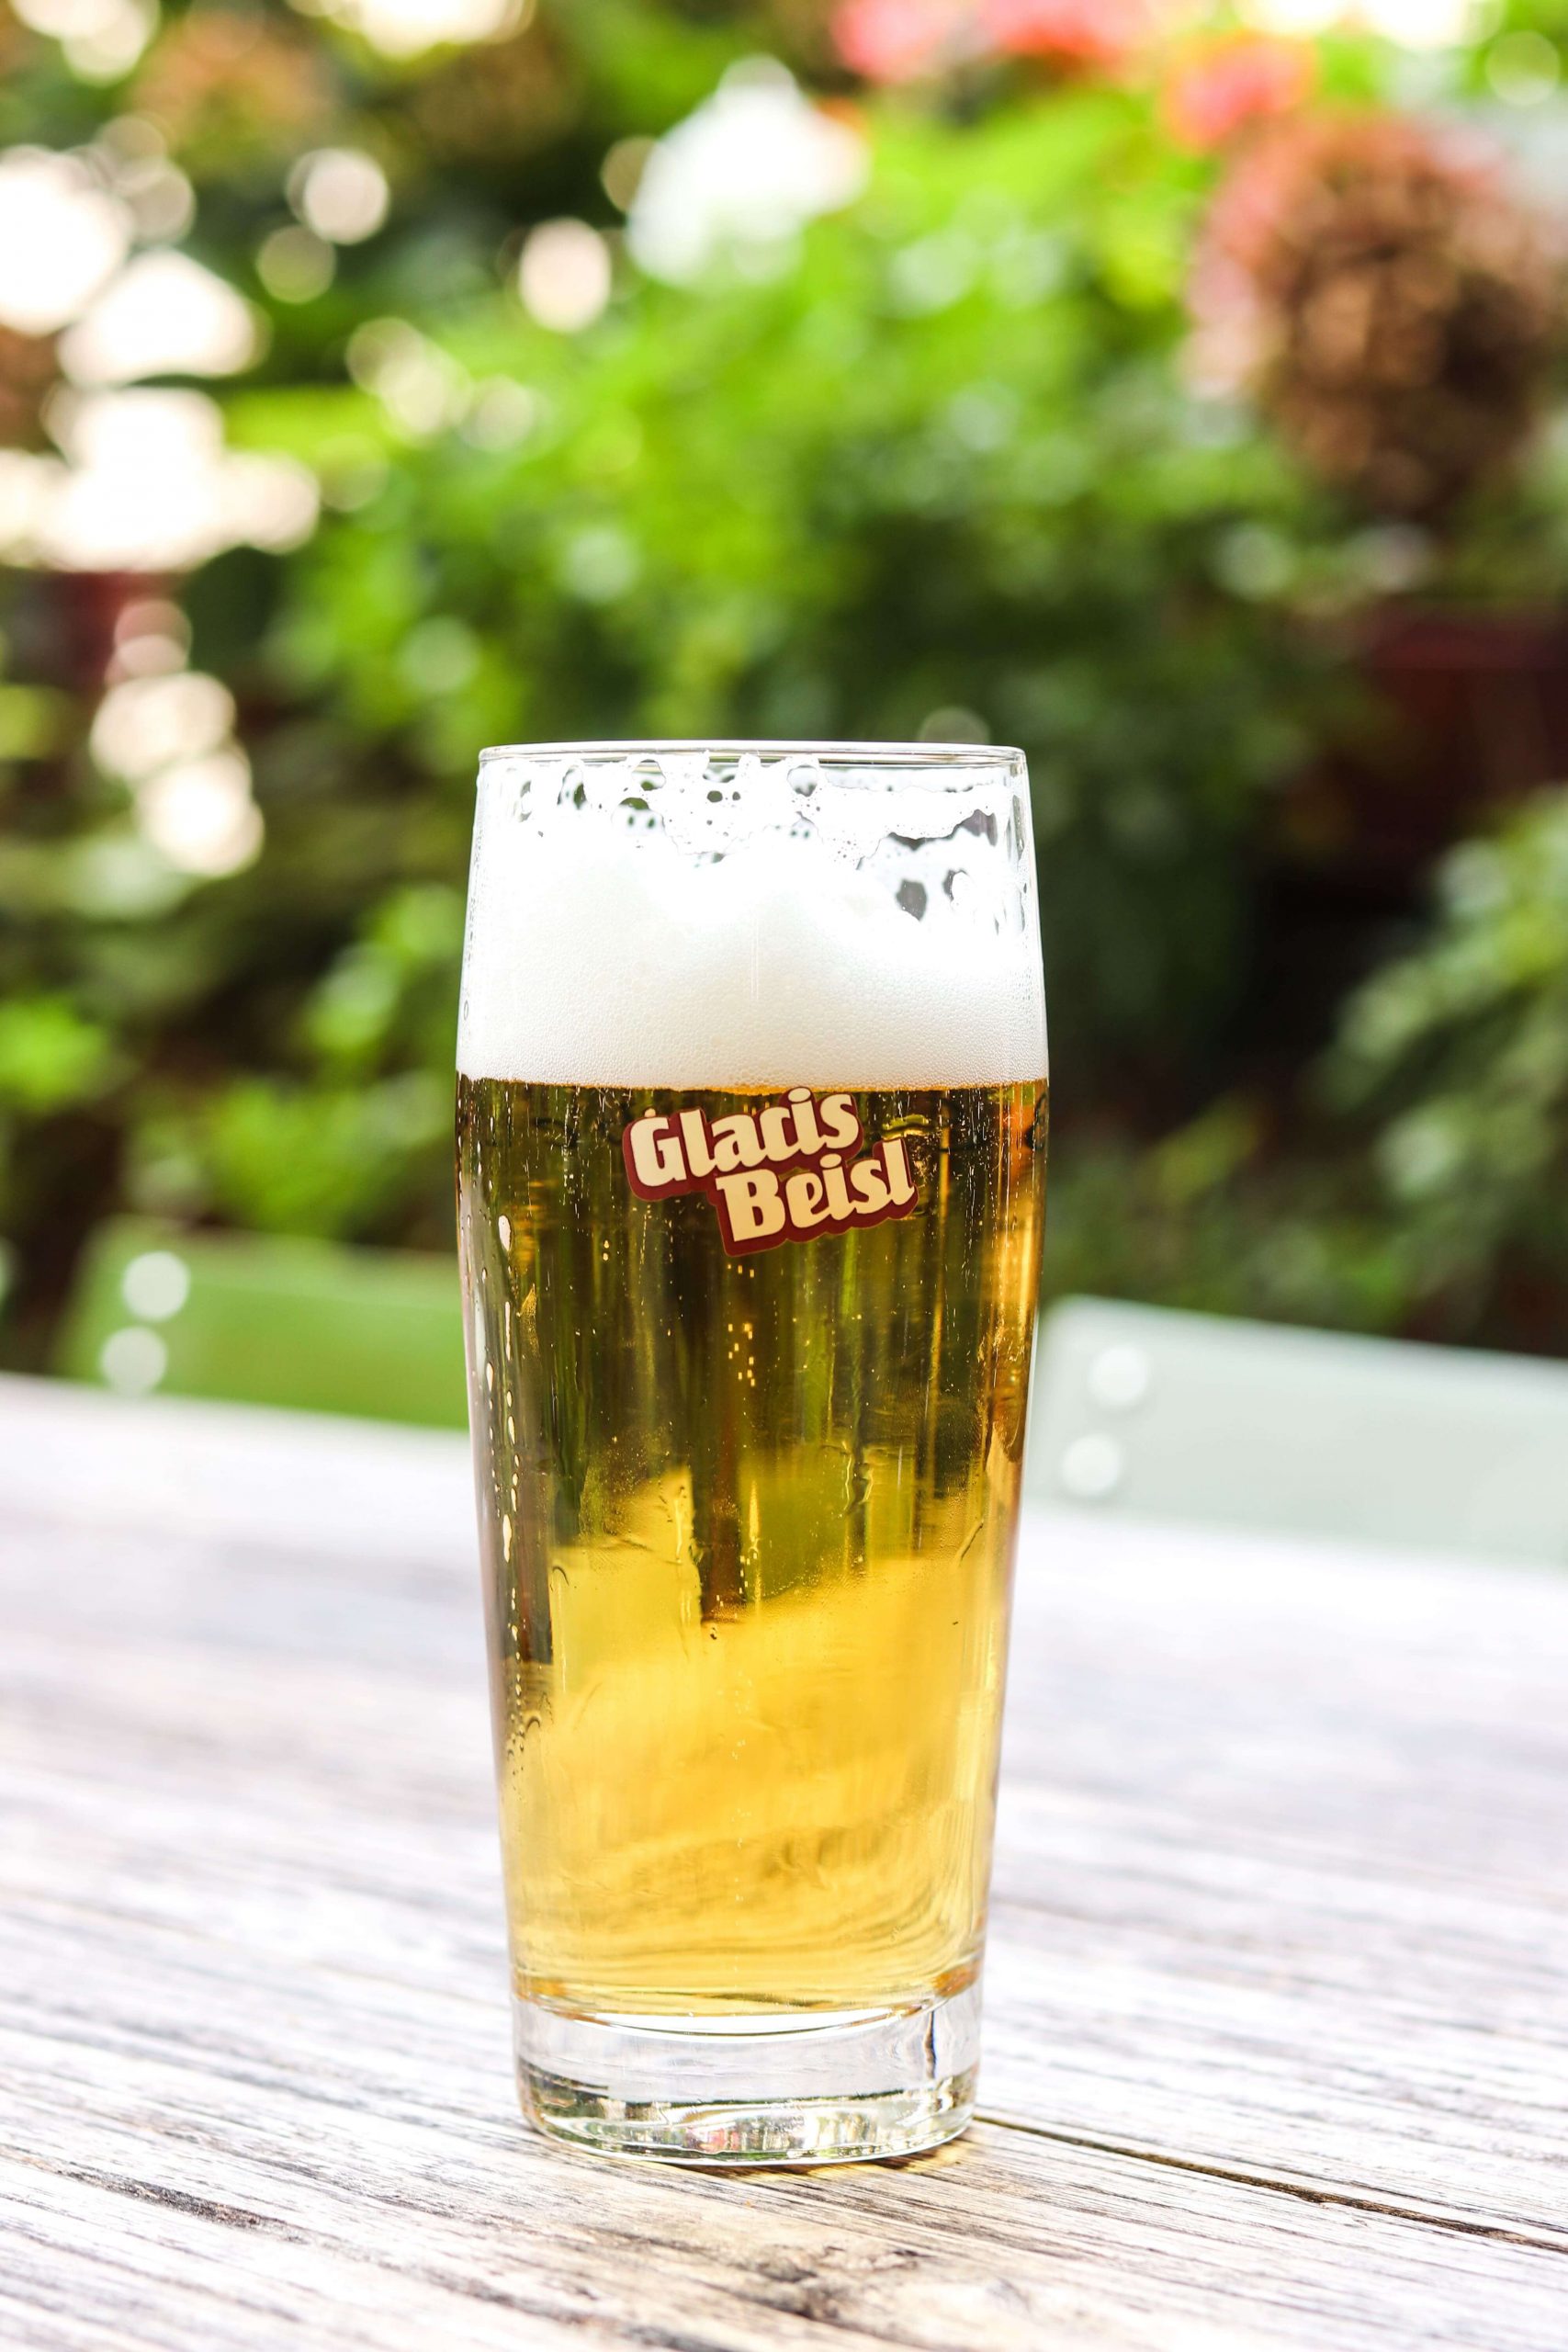 Glacis-Beisl-beer